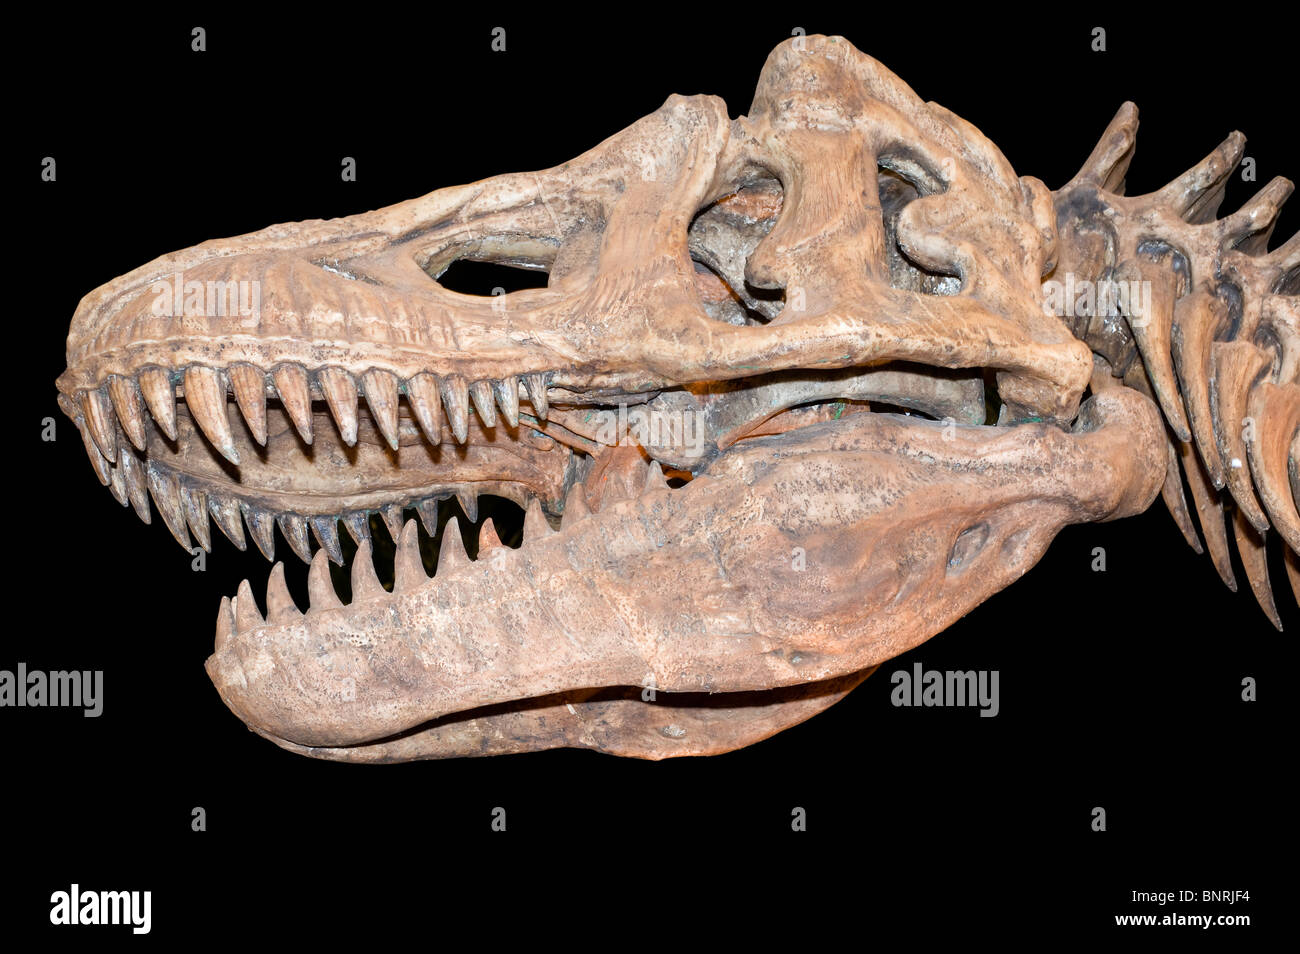 tyrannosaurus skull isolated on black Stock Photo